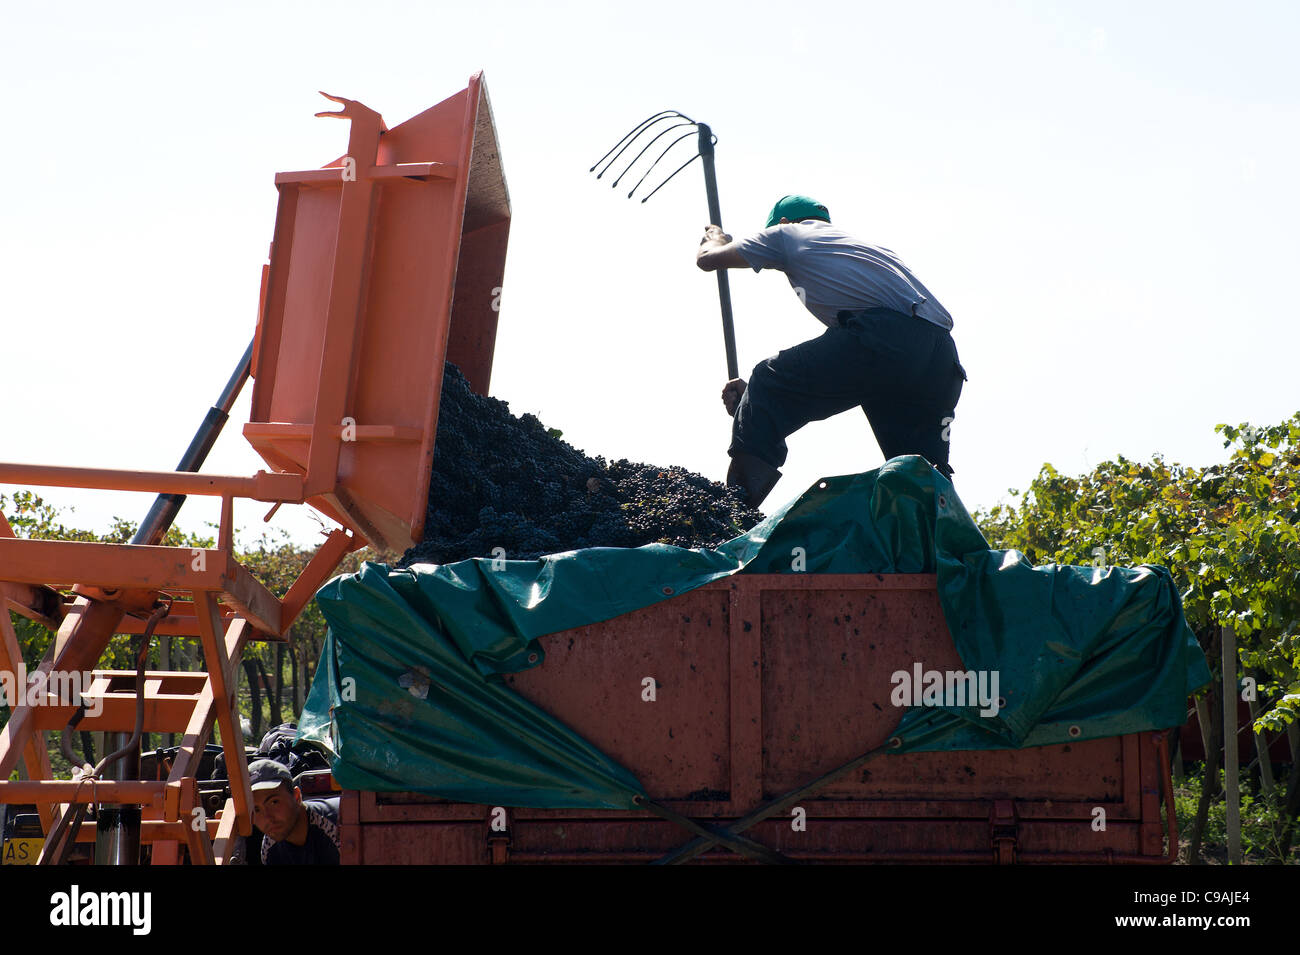 La récolte dans un vignoble - Pouilles, Italie du sud Banque D'Images